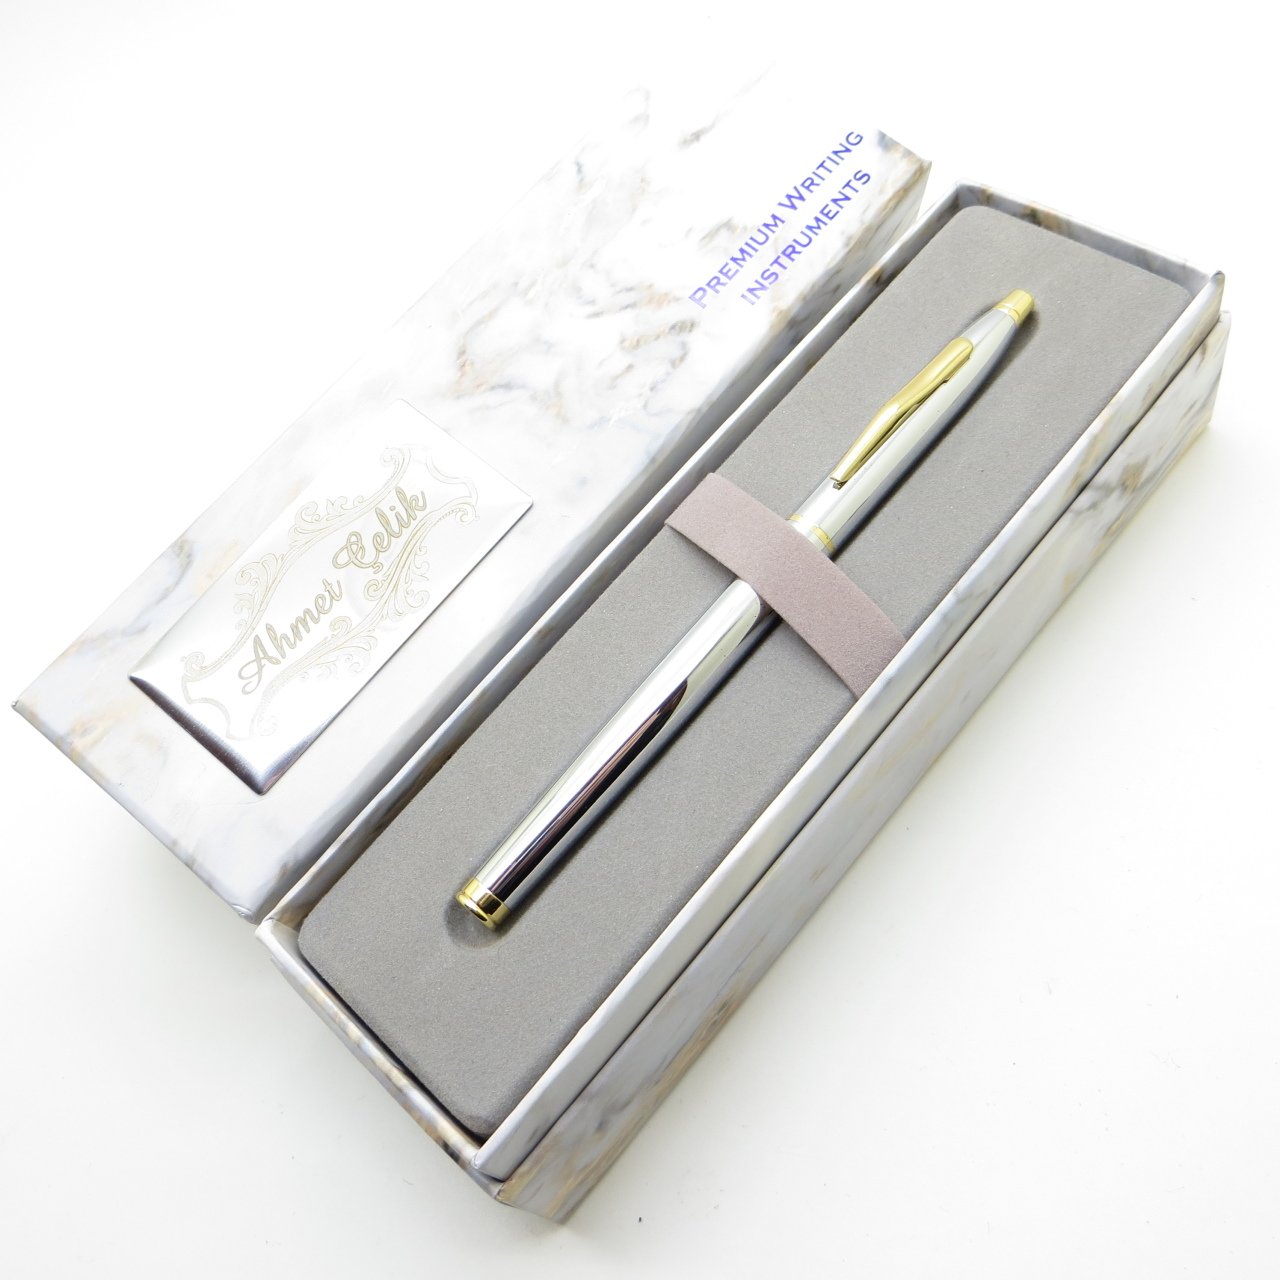 날개 대리석 R62 골드 크롬 롤러 펜, 특수 펜, 선물용 펜